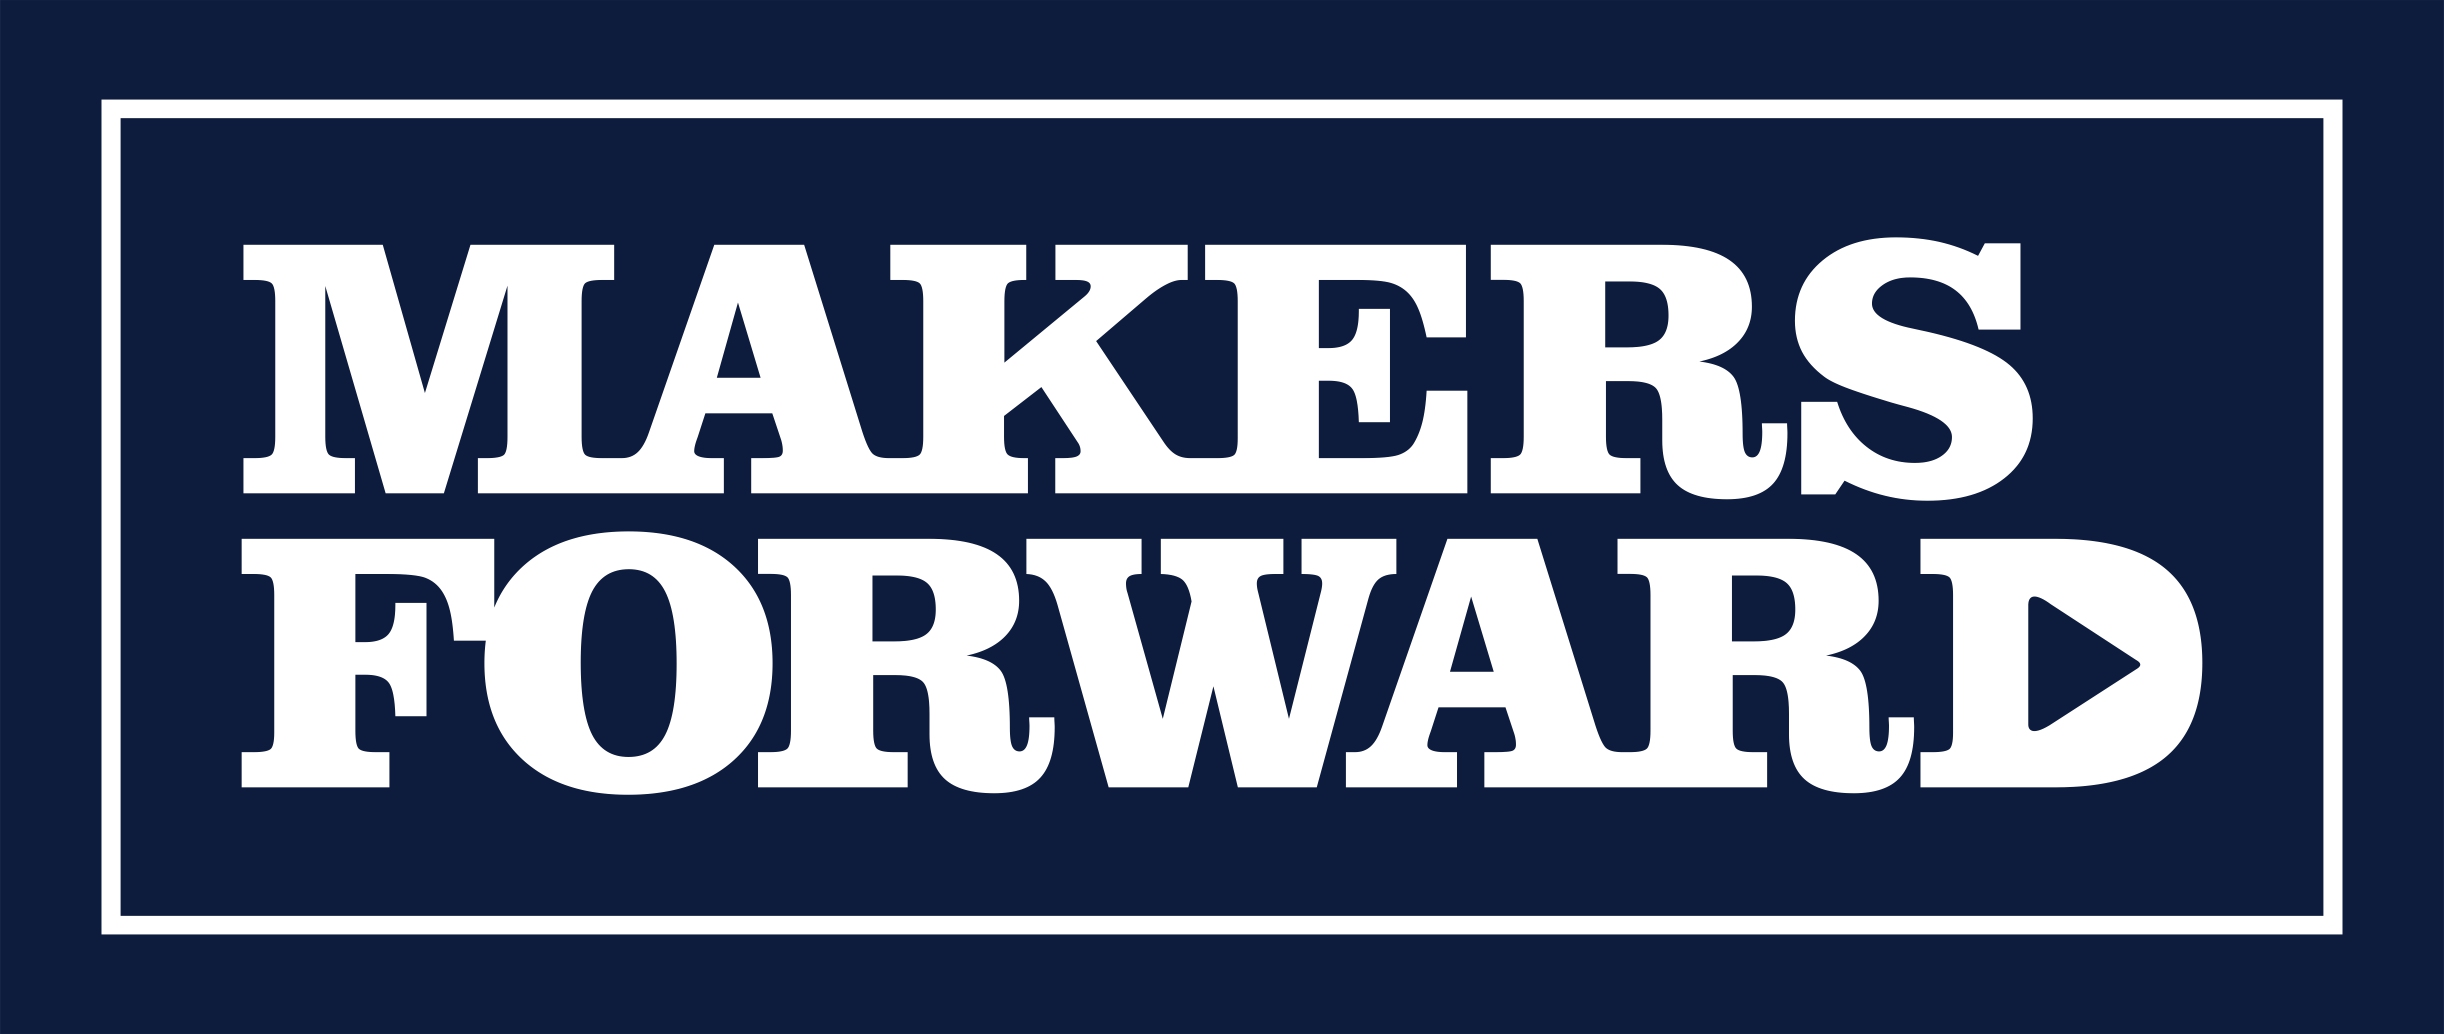 MakersForward, LLC